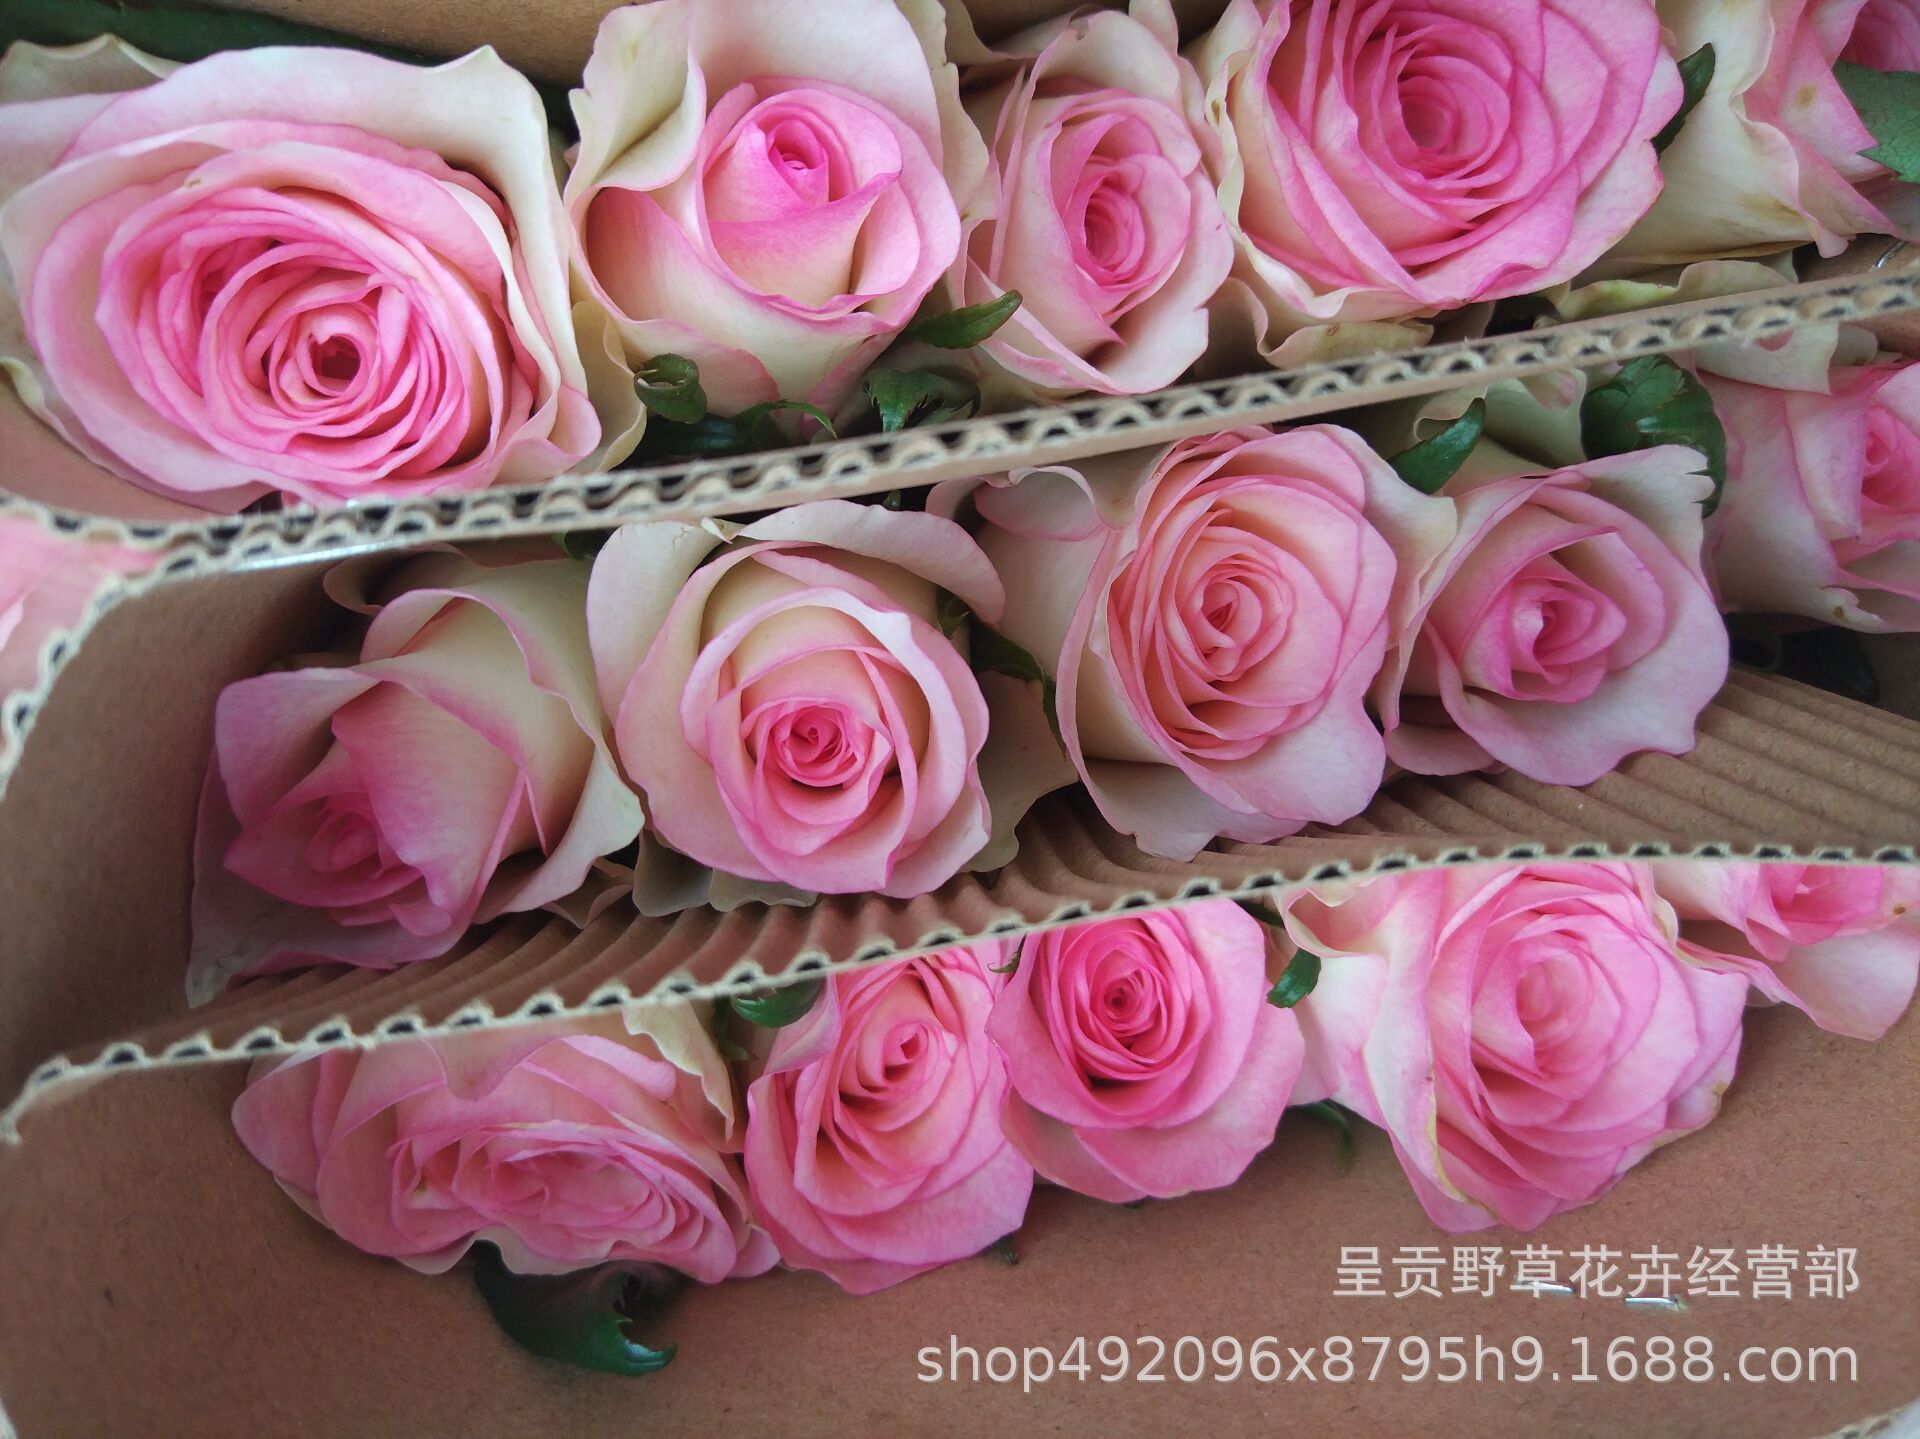 粉红玫瑰鲜花红袖玫瑰桃红雪山玫瑰各种玫瑰玫瑰大全玫瑰超市20支